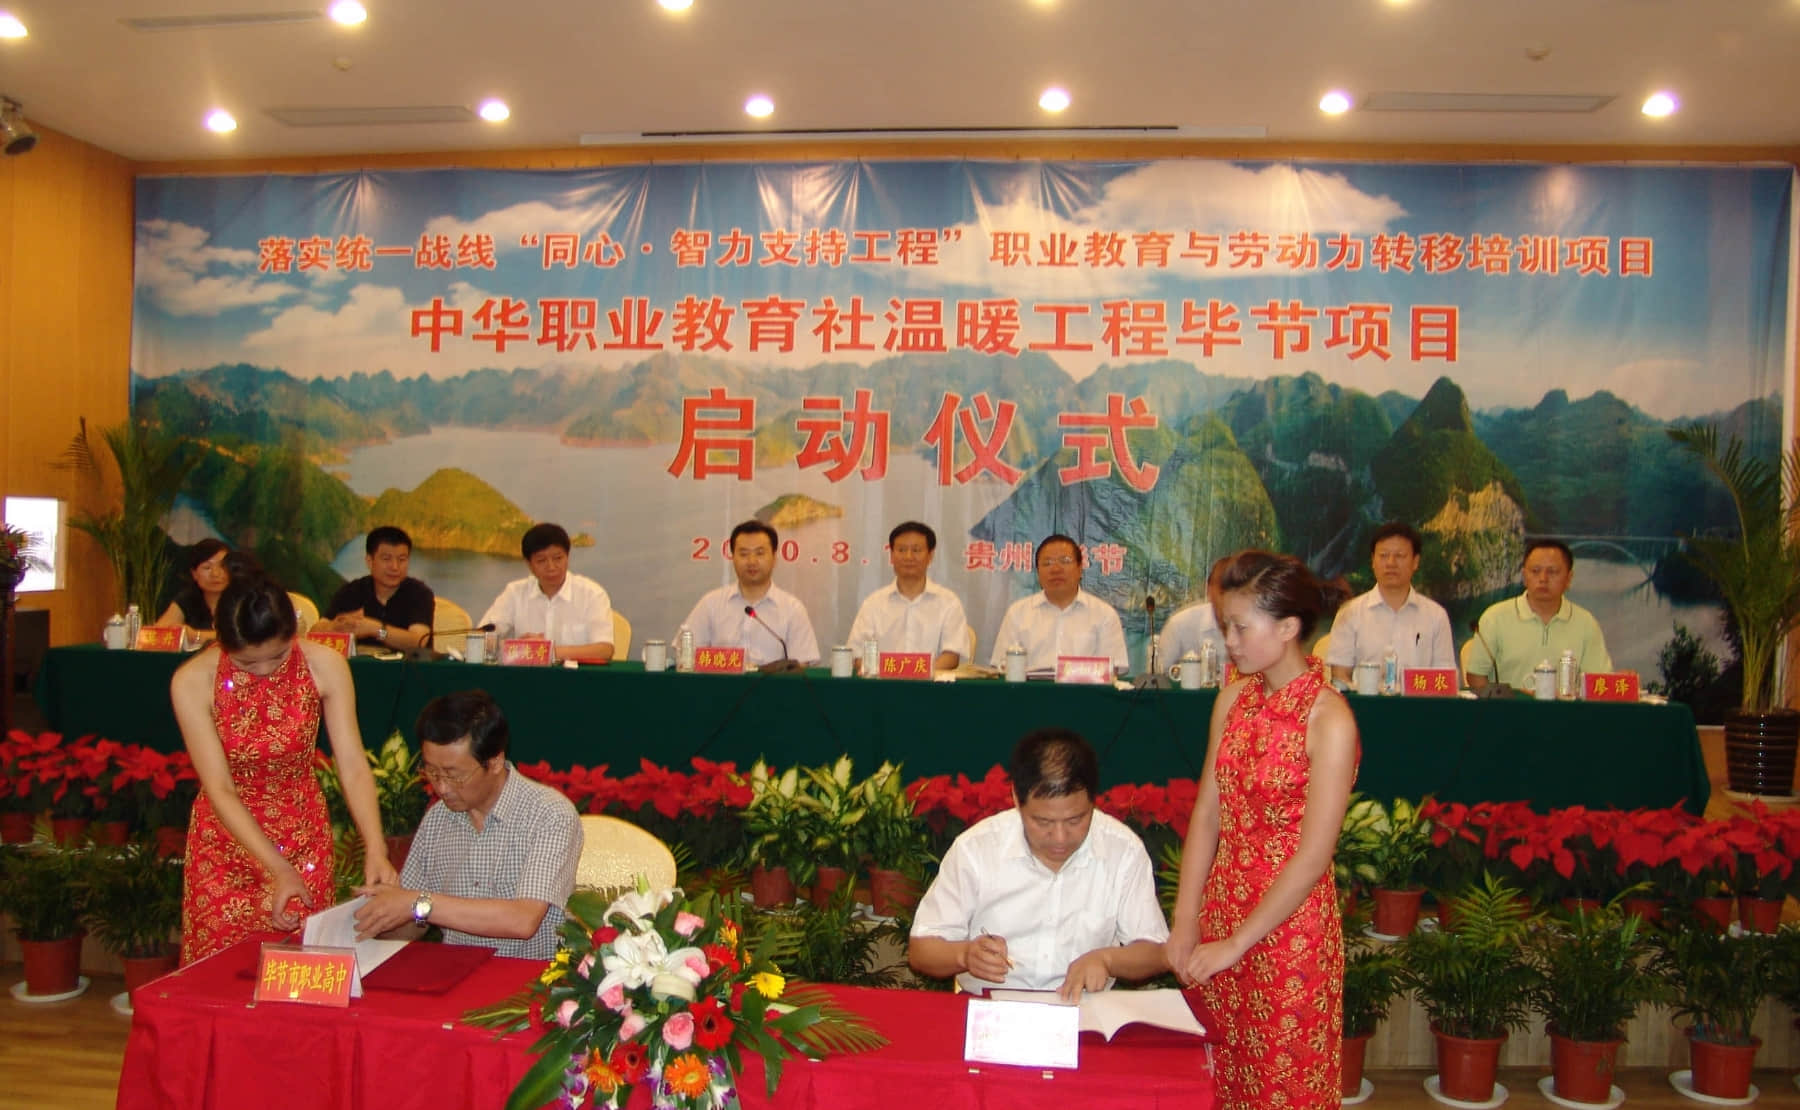 2010年8月，援助方和受助学校在仪式上签定合作意向书.jpg